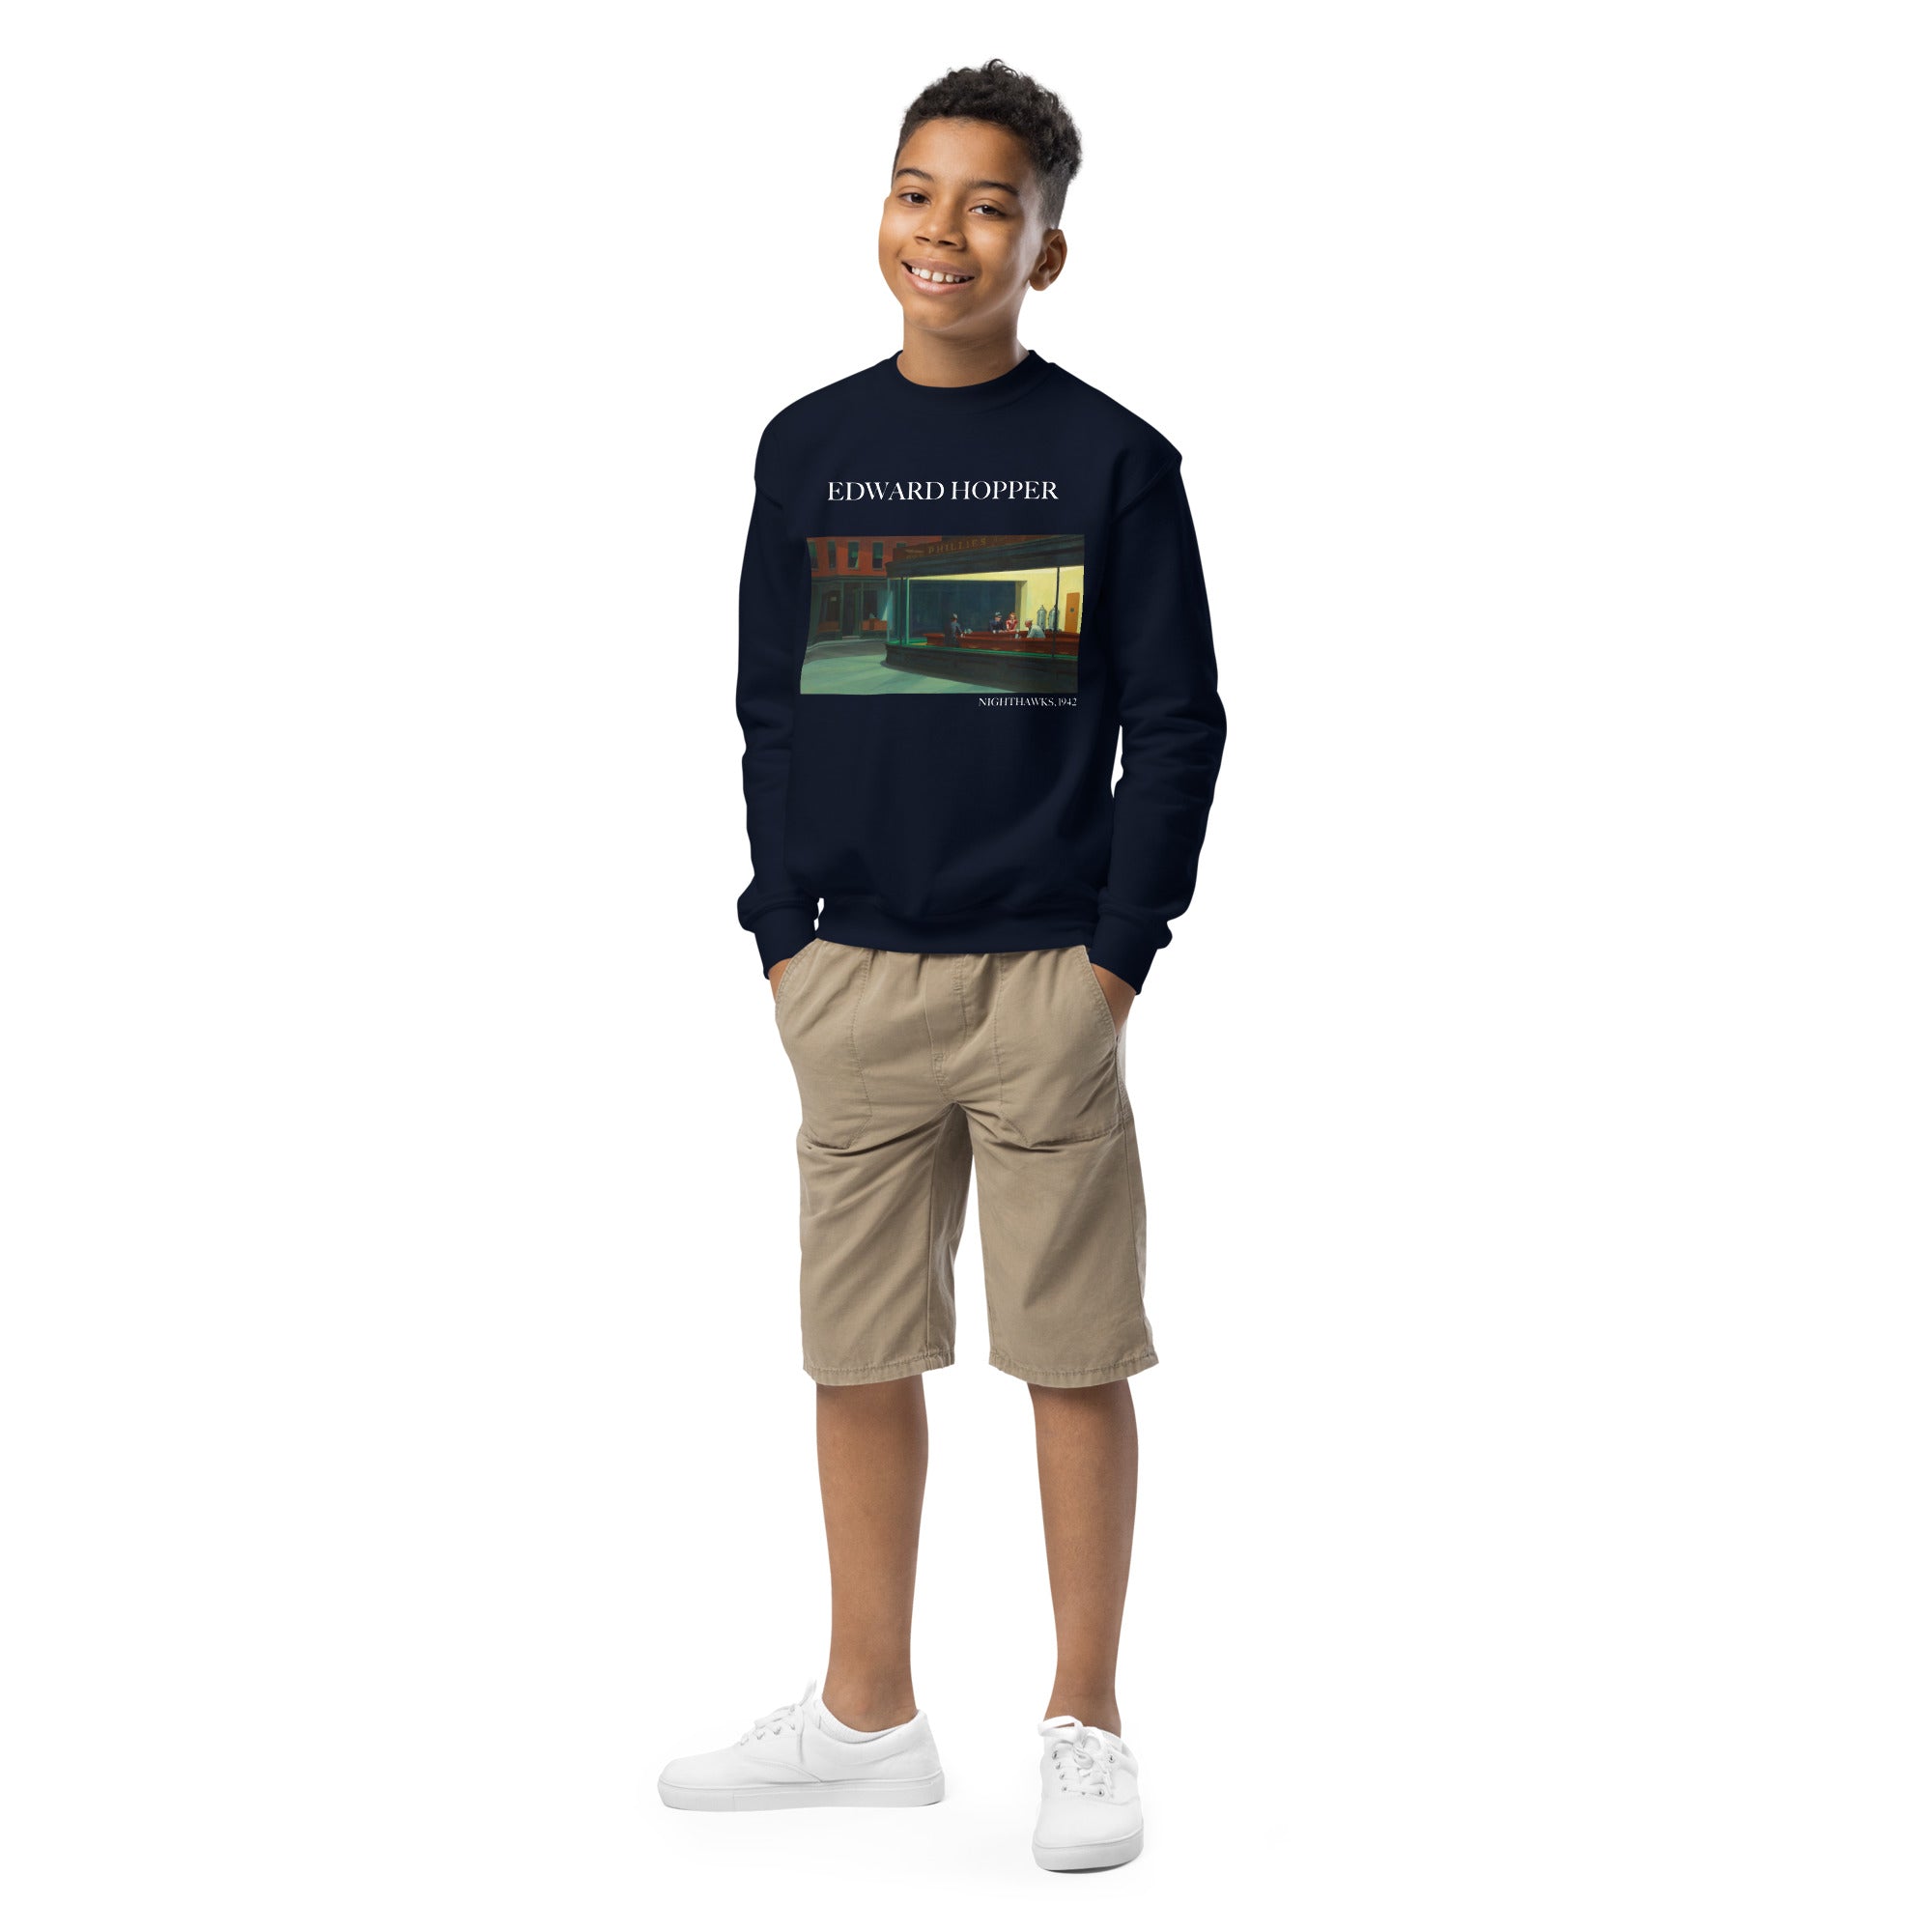 Edward Hopper 'Nighthawks' Famous Painting Crewneck Sweatshirt | Premium Youth Art Sweatshirt